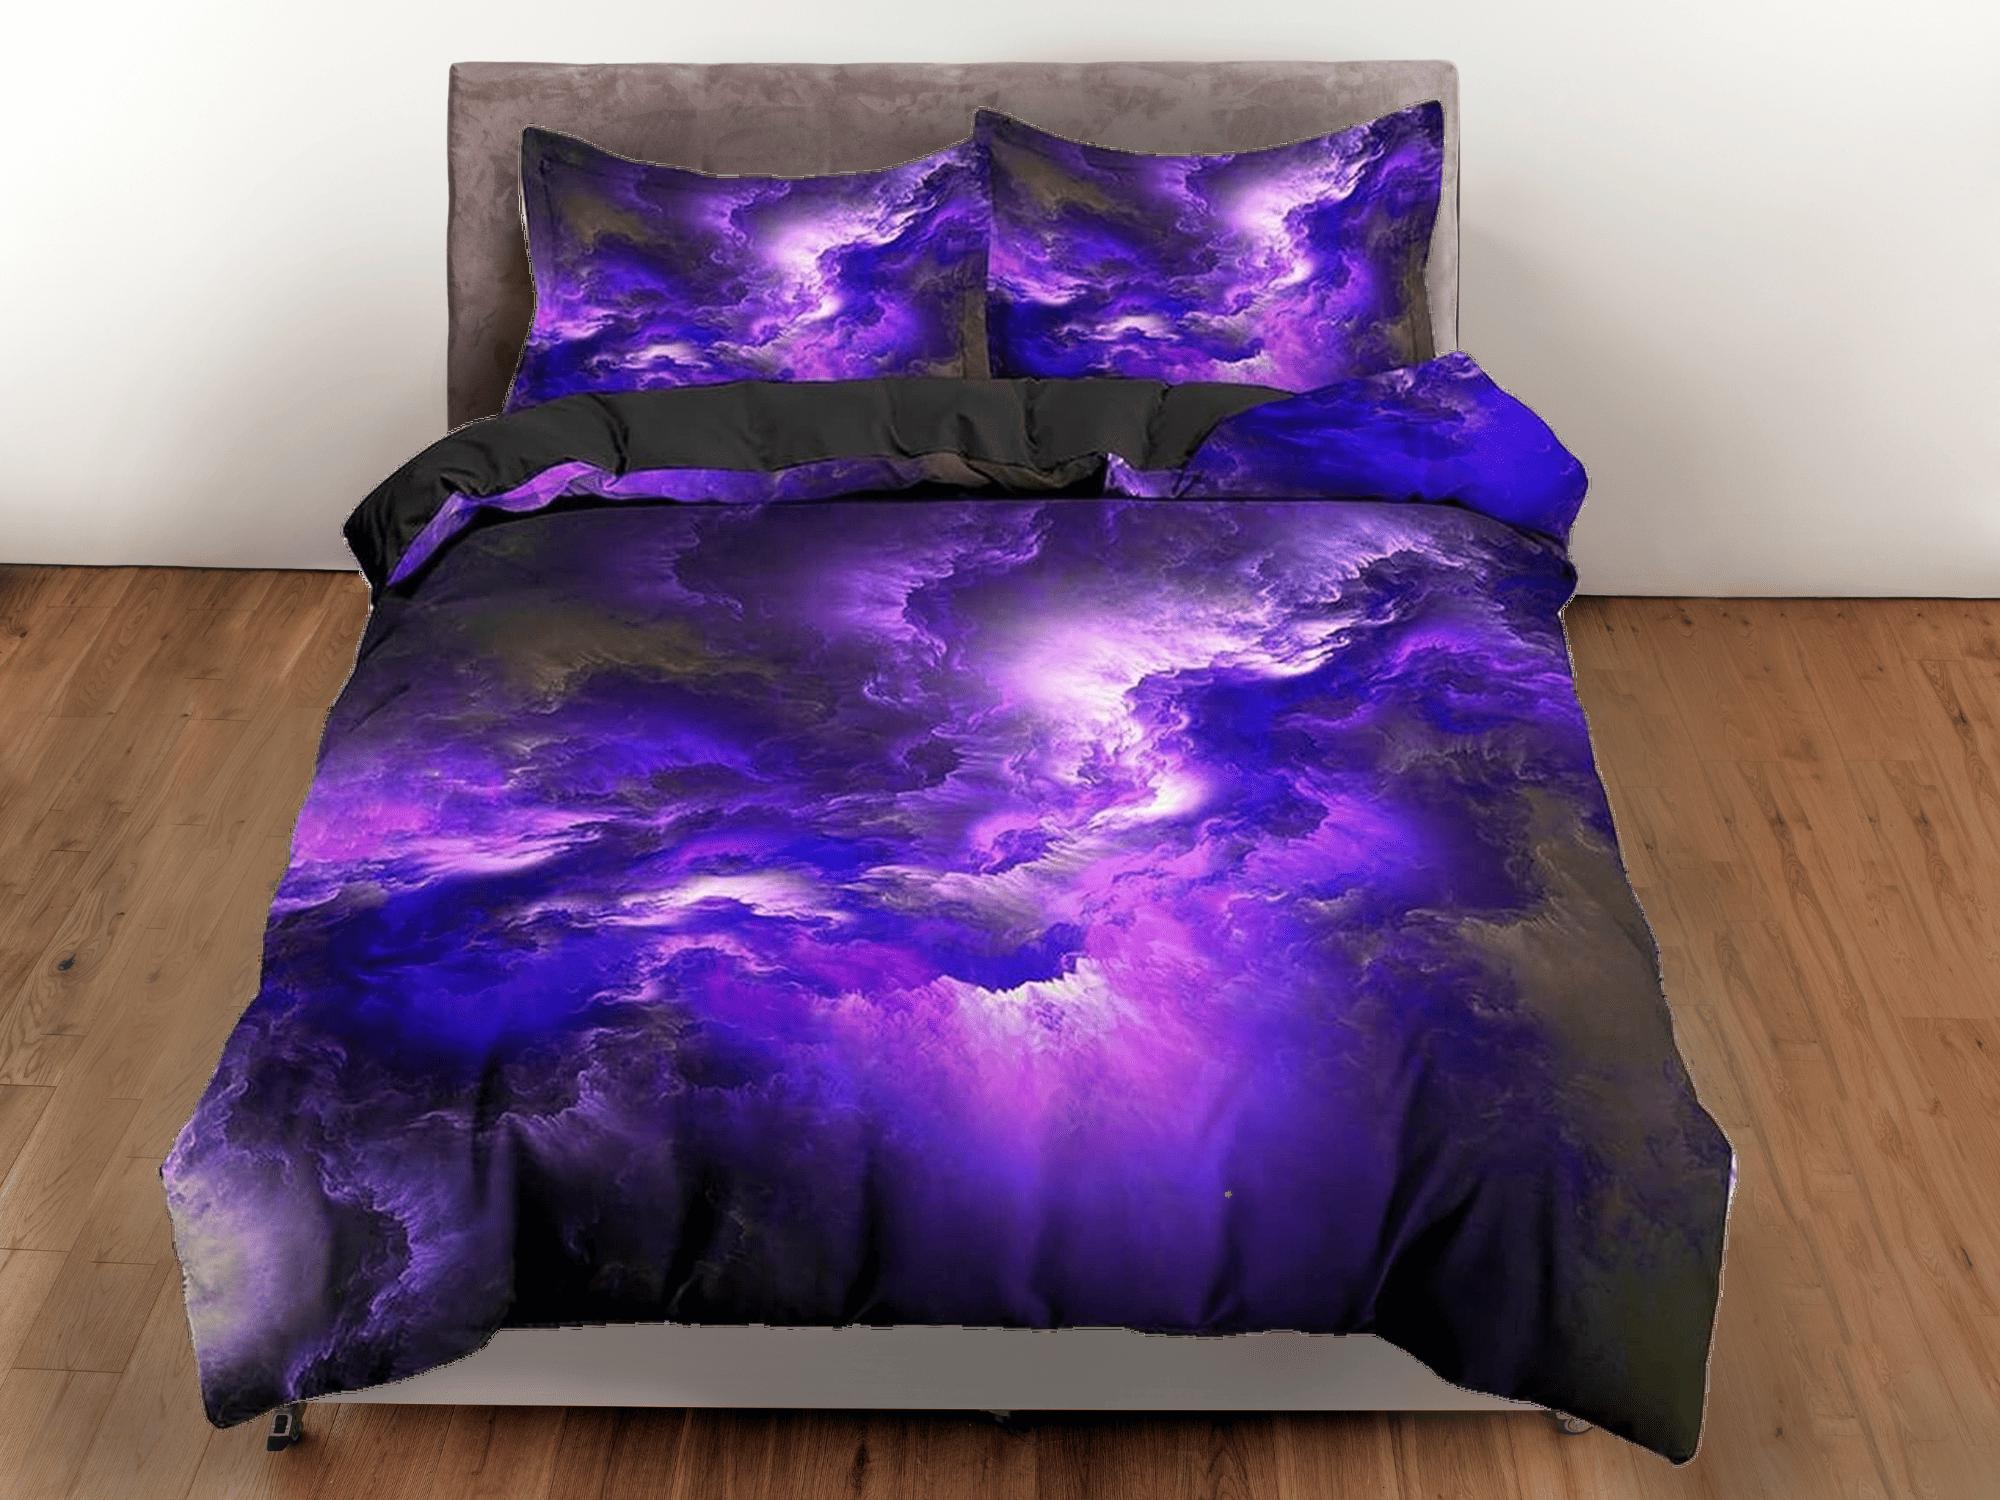 daintyduvet Nebula galaxy purple bedding, 3d outer space bedding set full, cosmic duvet cover king, queen, dorm bedding, toddler bedding aesthetic duvet